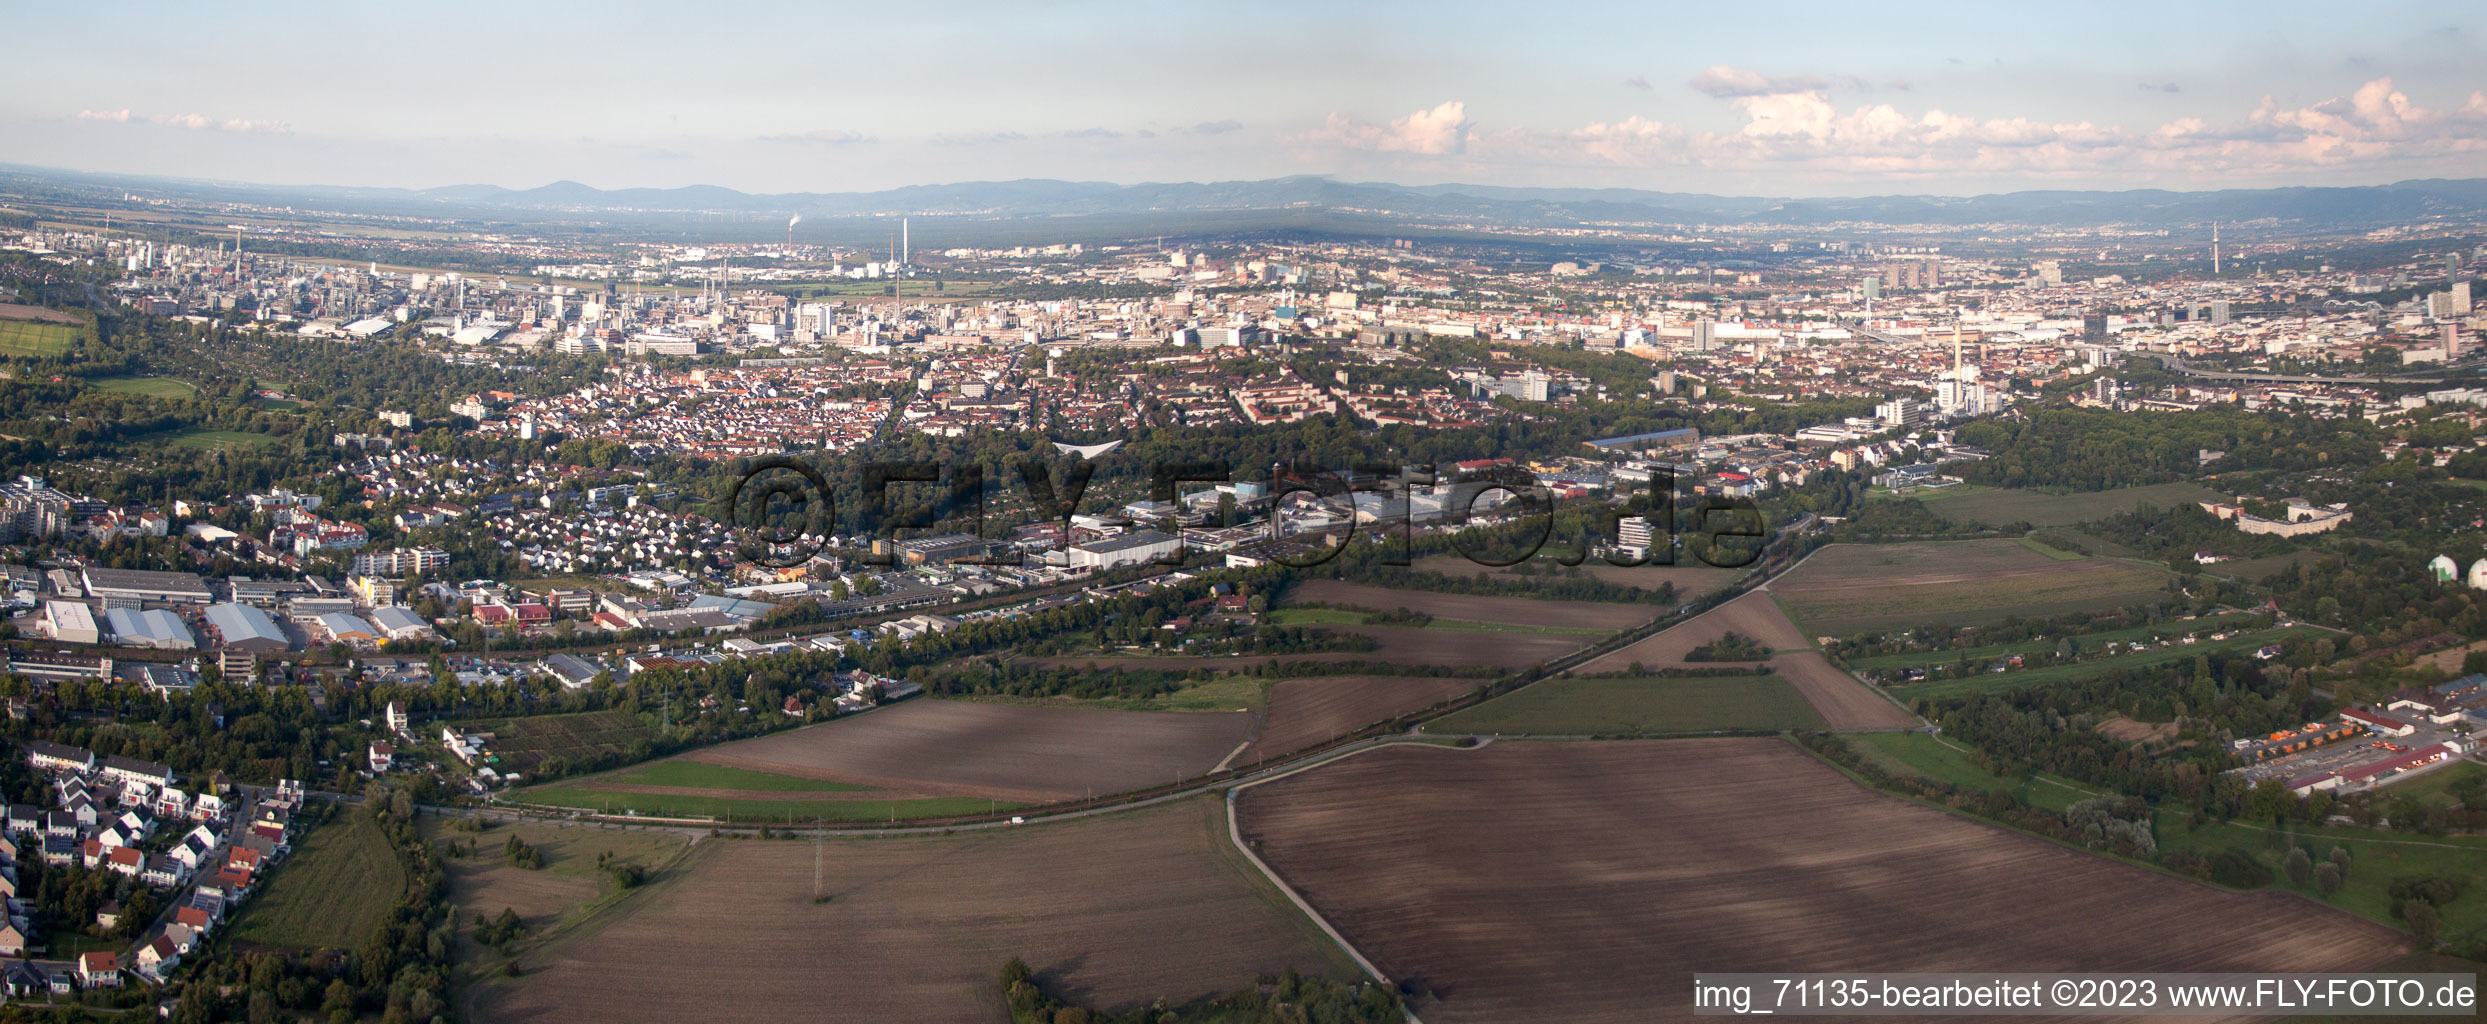 Ortsteil Friesenheim in Ludwigshafen am Rhein im Bundesland Rheinland-Pfalz, Deutschland aus der Luft betrachtet